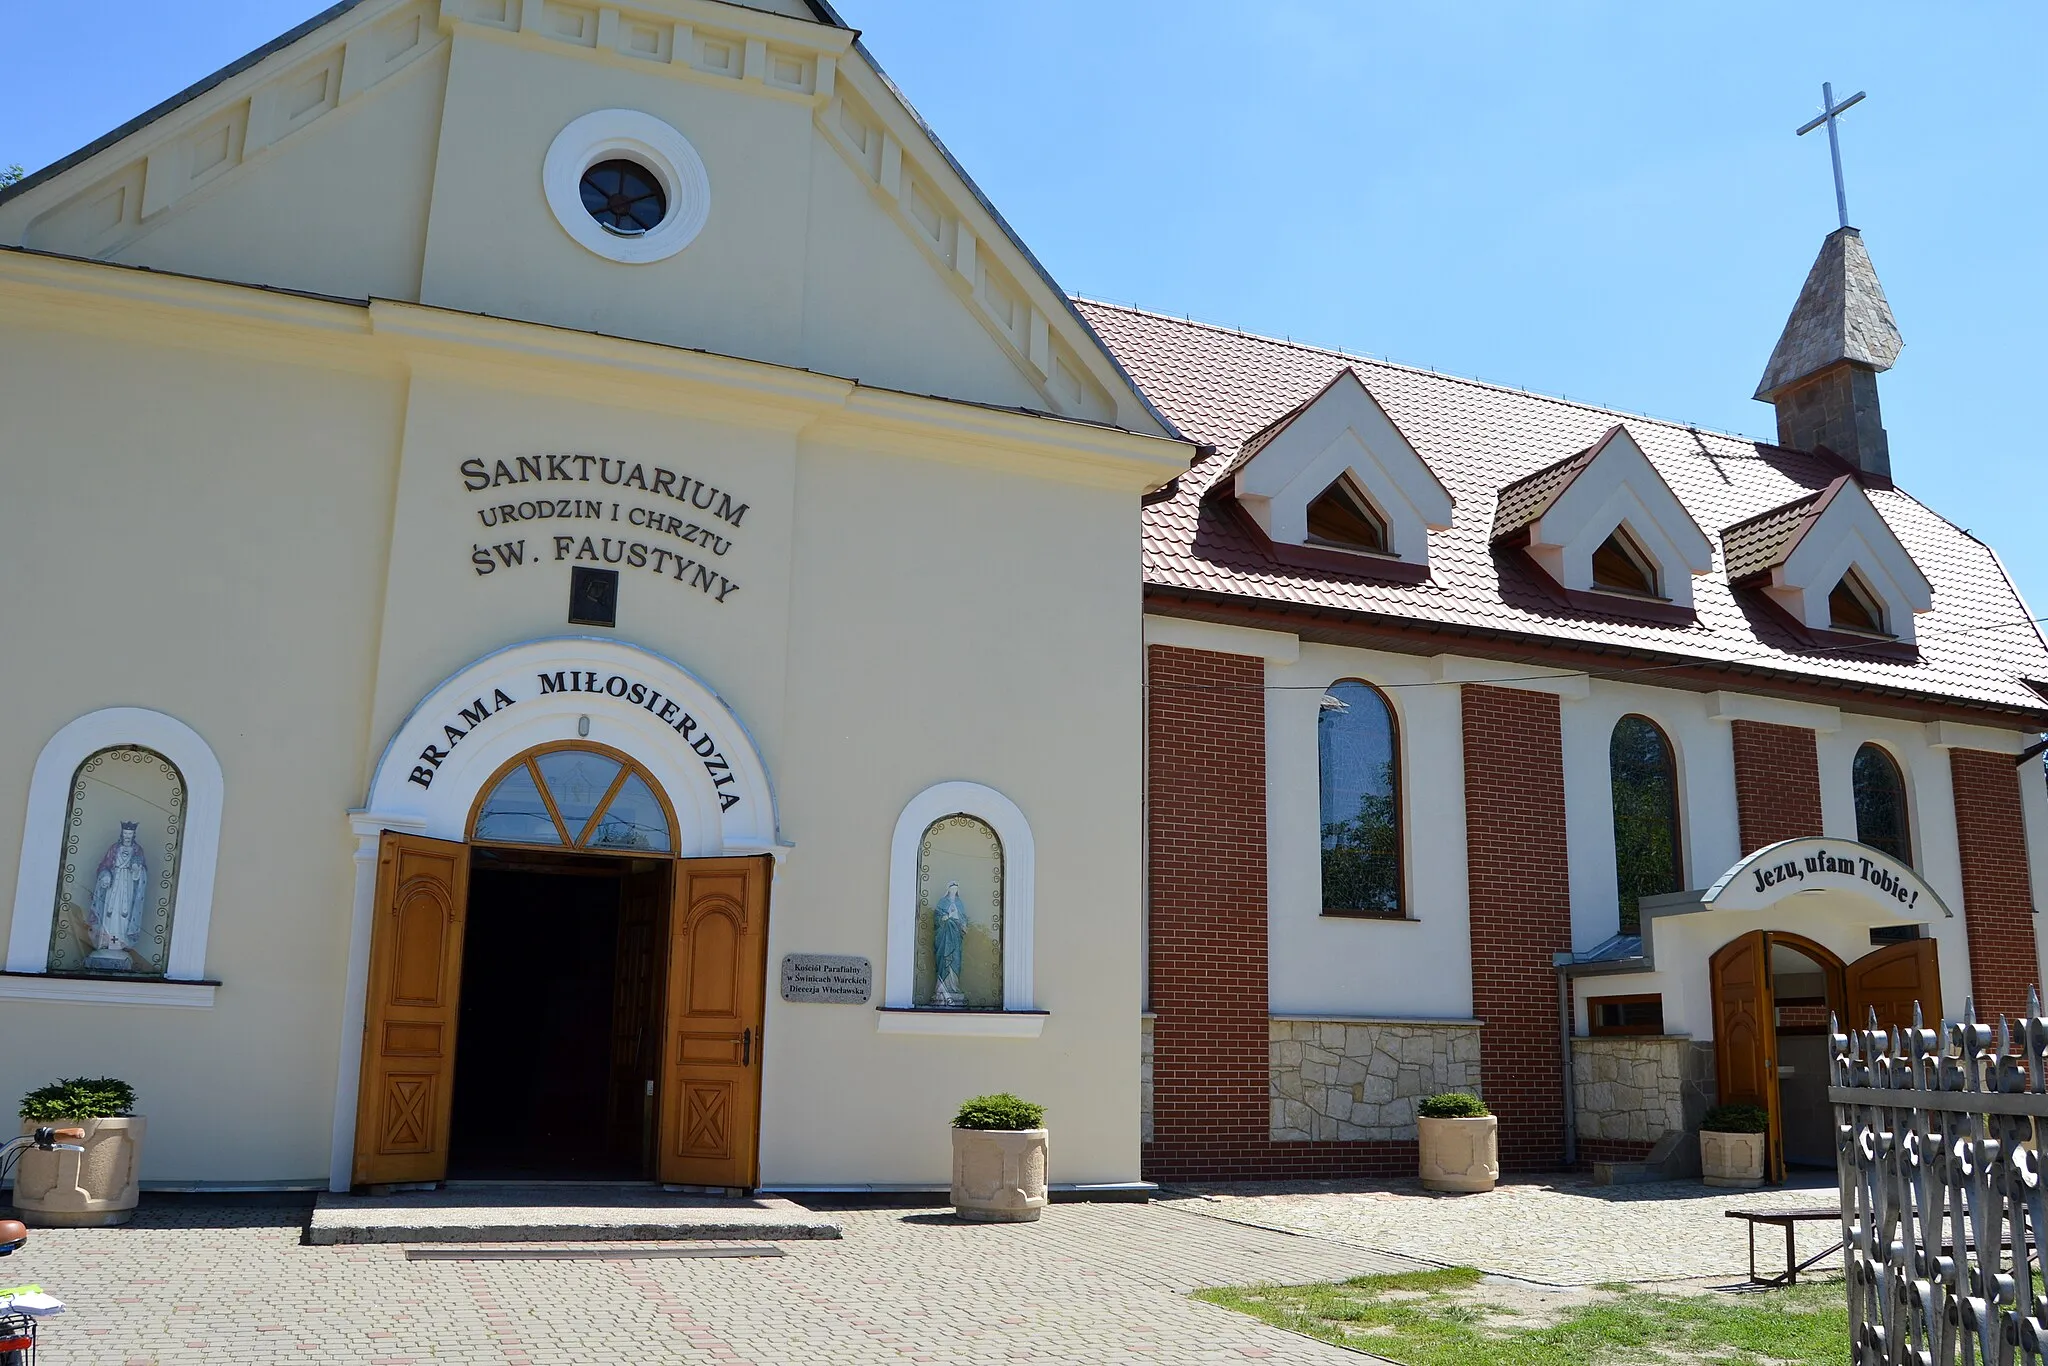 Photo showing: Kościół św. Kazimierza w Świnicach Warckich, sanktuarium Urodzin i Chrztu św. Faustyny Kowalskiej